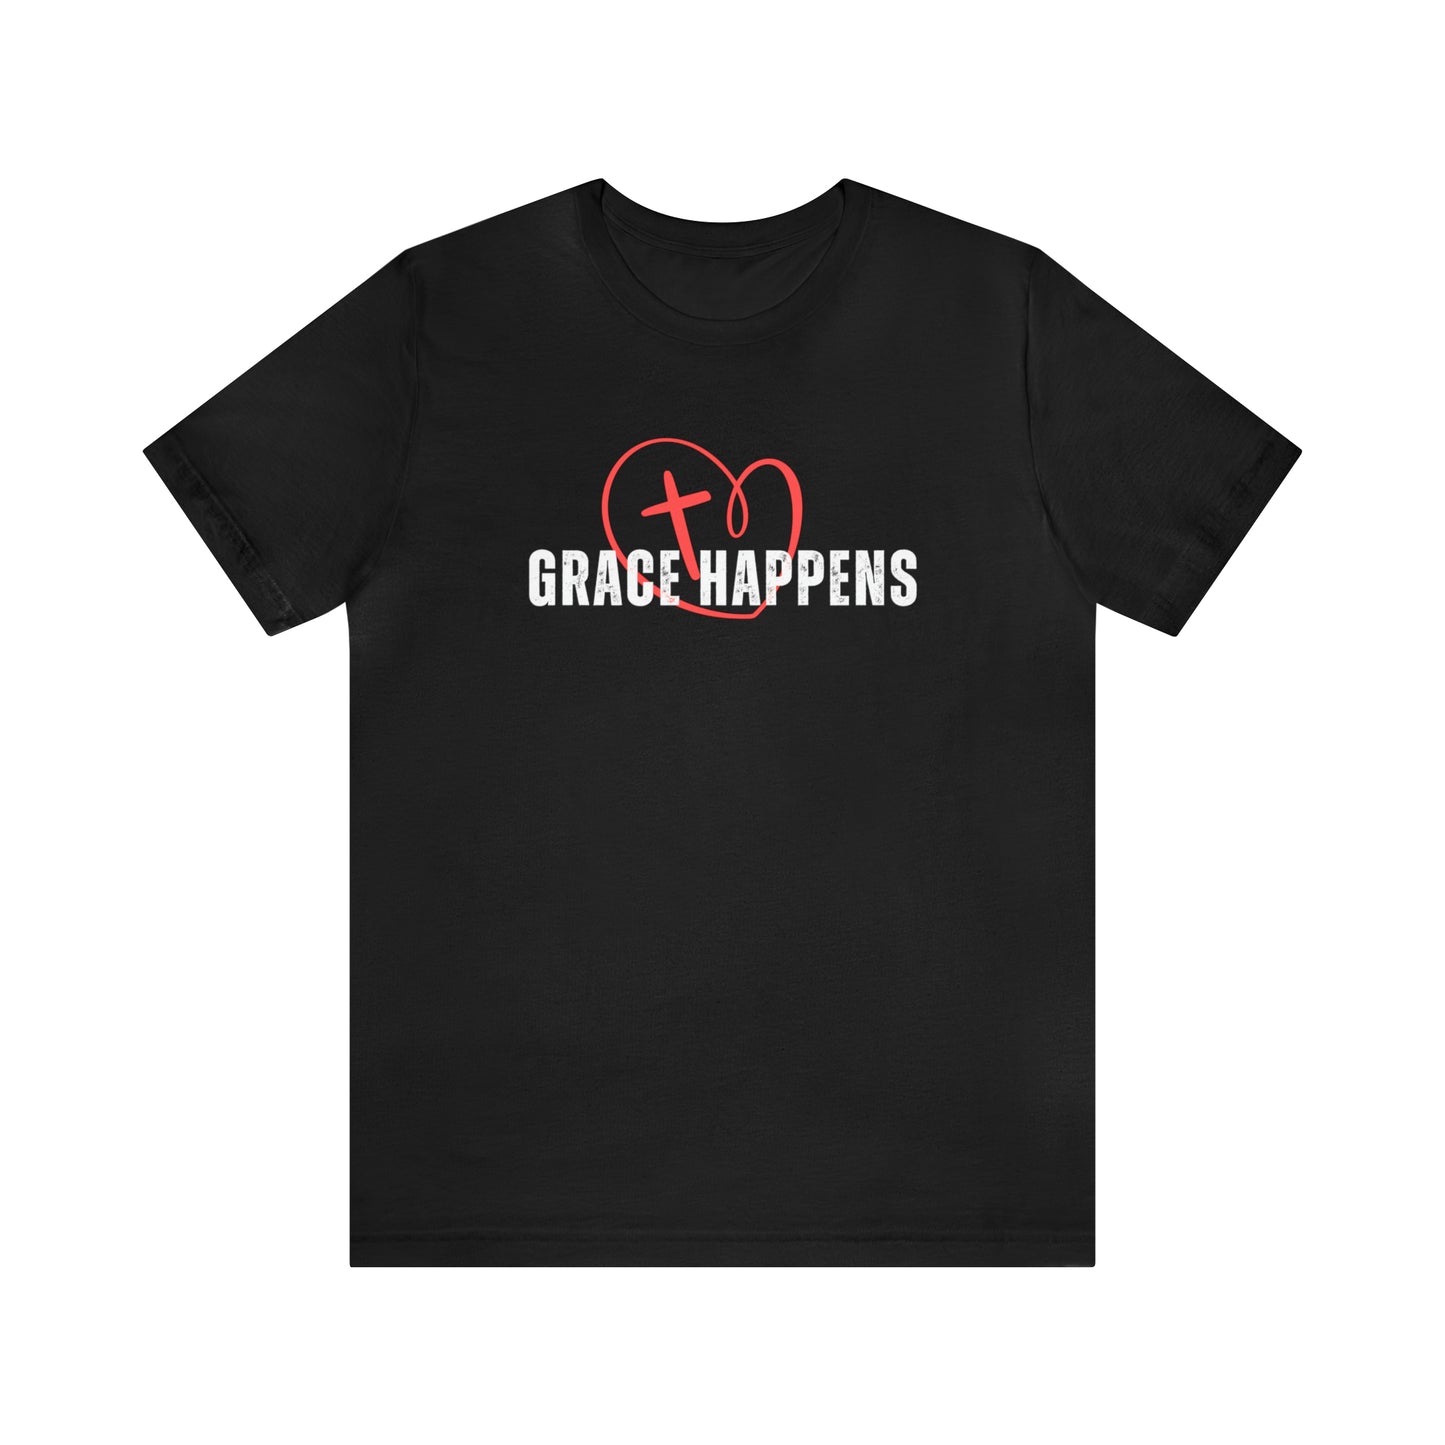 Grace Happens T-Shirt - Criss Cross my Heart